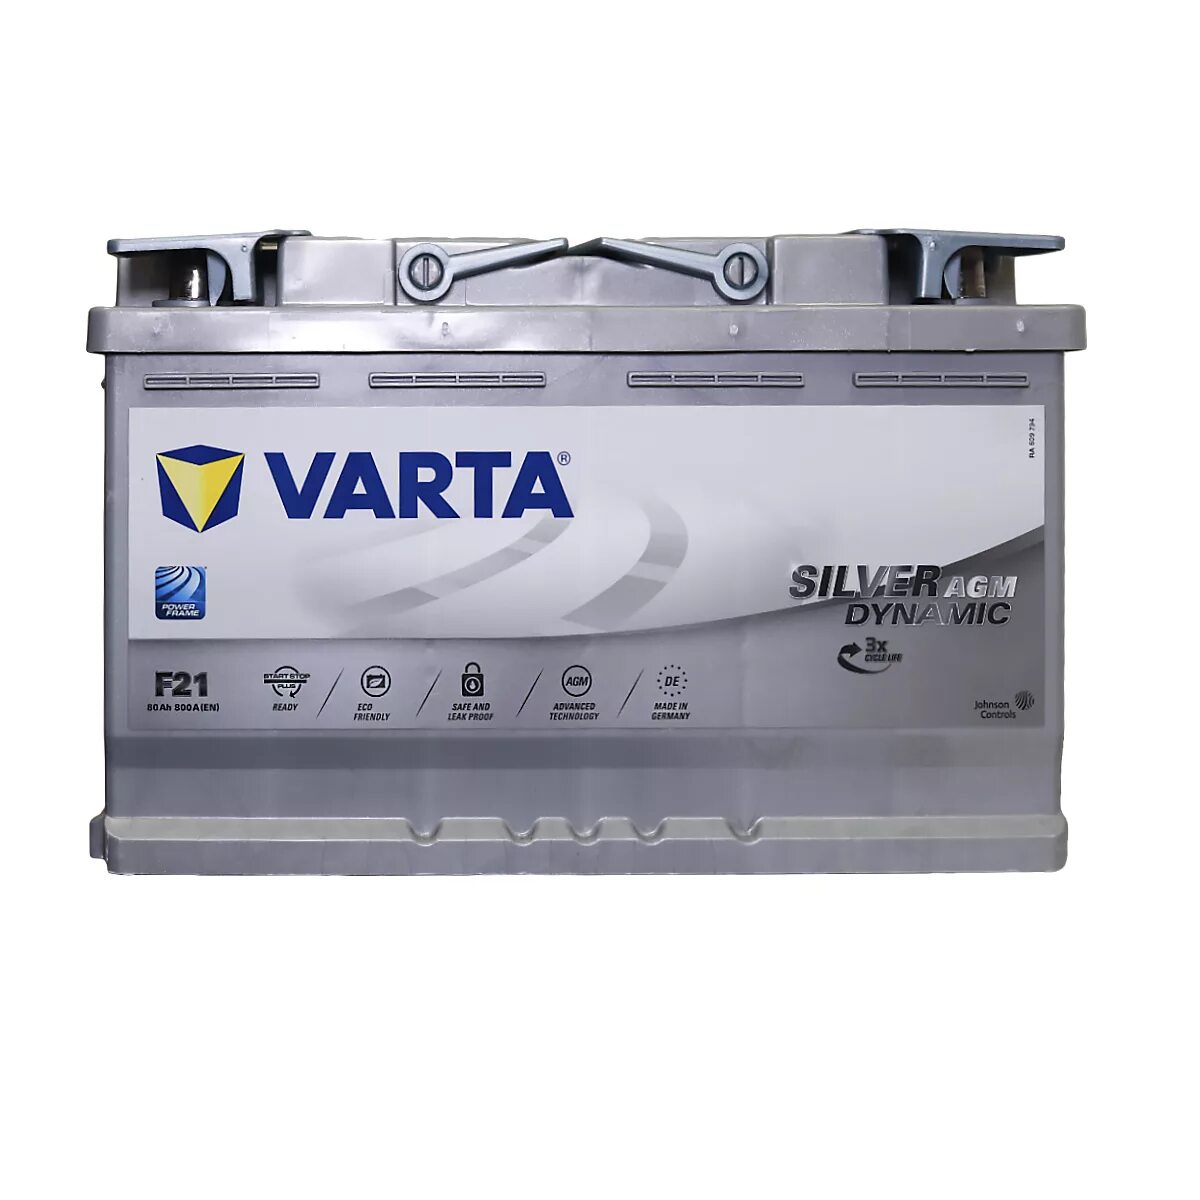 580901080 Varta. Varta Silver Dynamic AGM f21. 580901080 Varta аккумулятор. Аккумулятор Varta Silver Dynamic AGM f21 (580 901 080) 315x175x190. Аккумулятор автомобильный 80ач